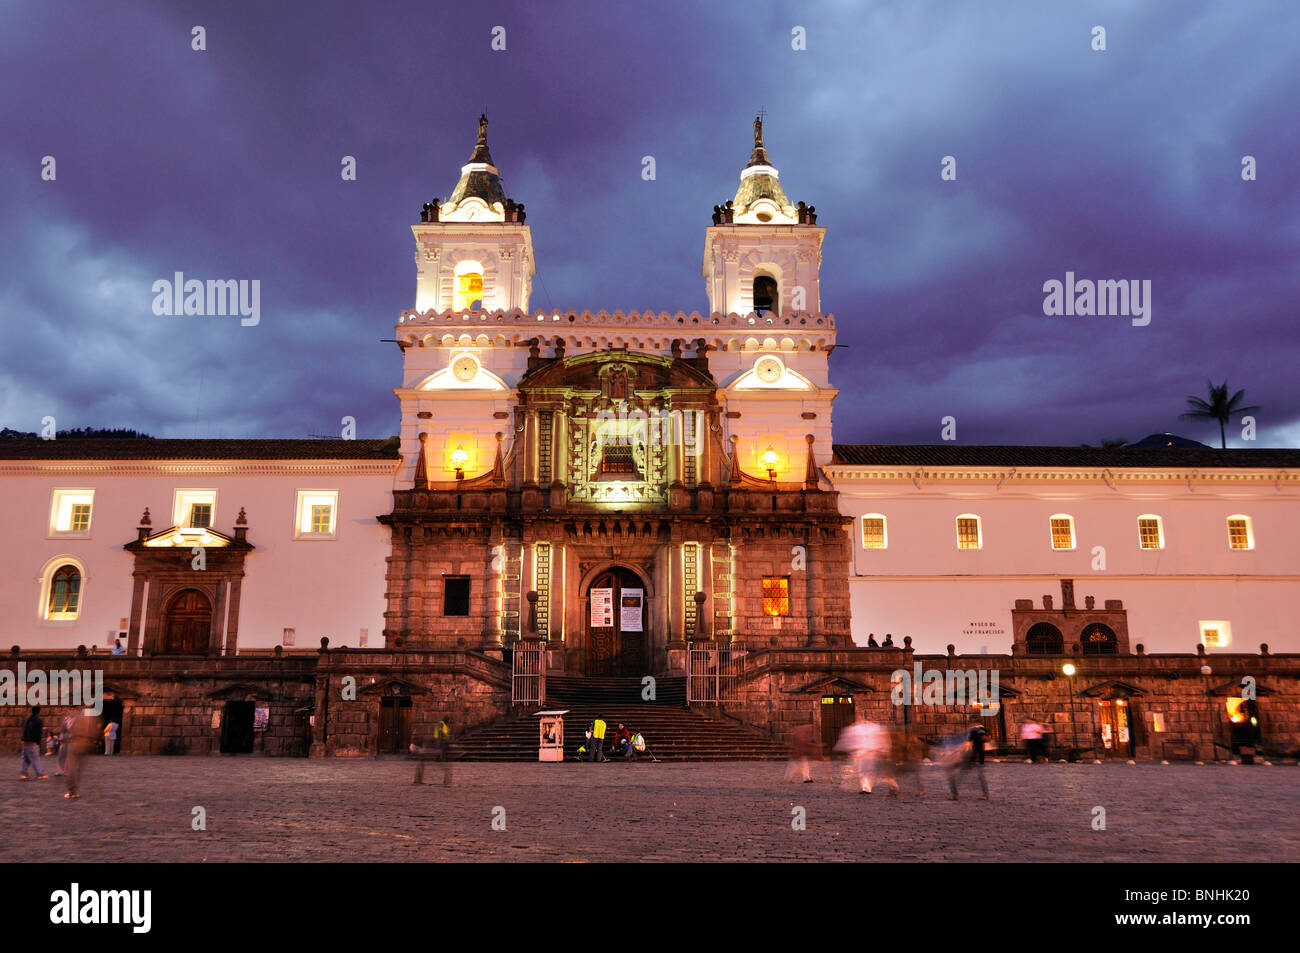 Ecuador Monasterio San Francisco Kirche alte Stadt Quito historischen quadratische Stadtmenschen Sonnenuntergang Dämmerung Nacht Architektur beleuchtet Stockfoto